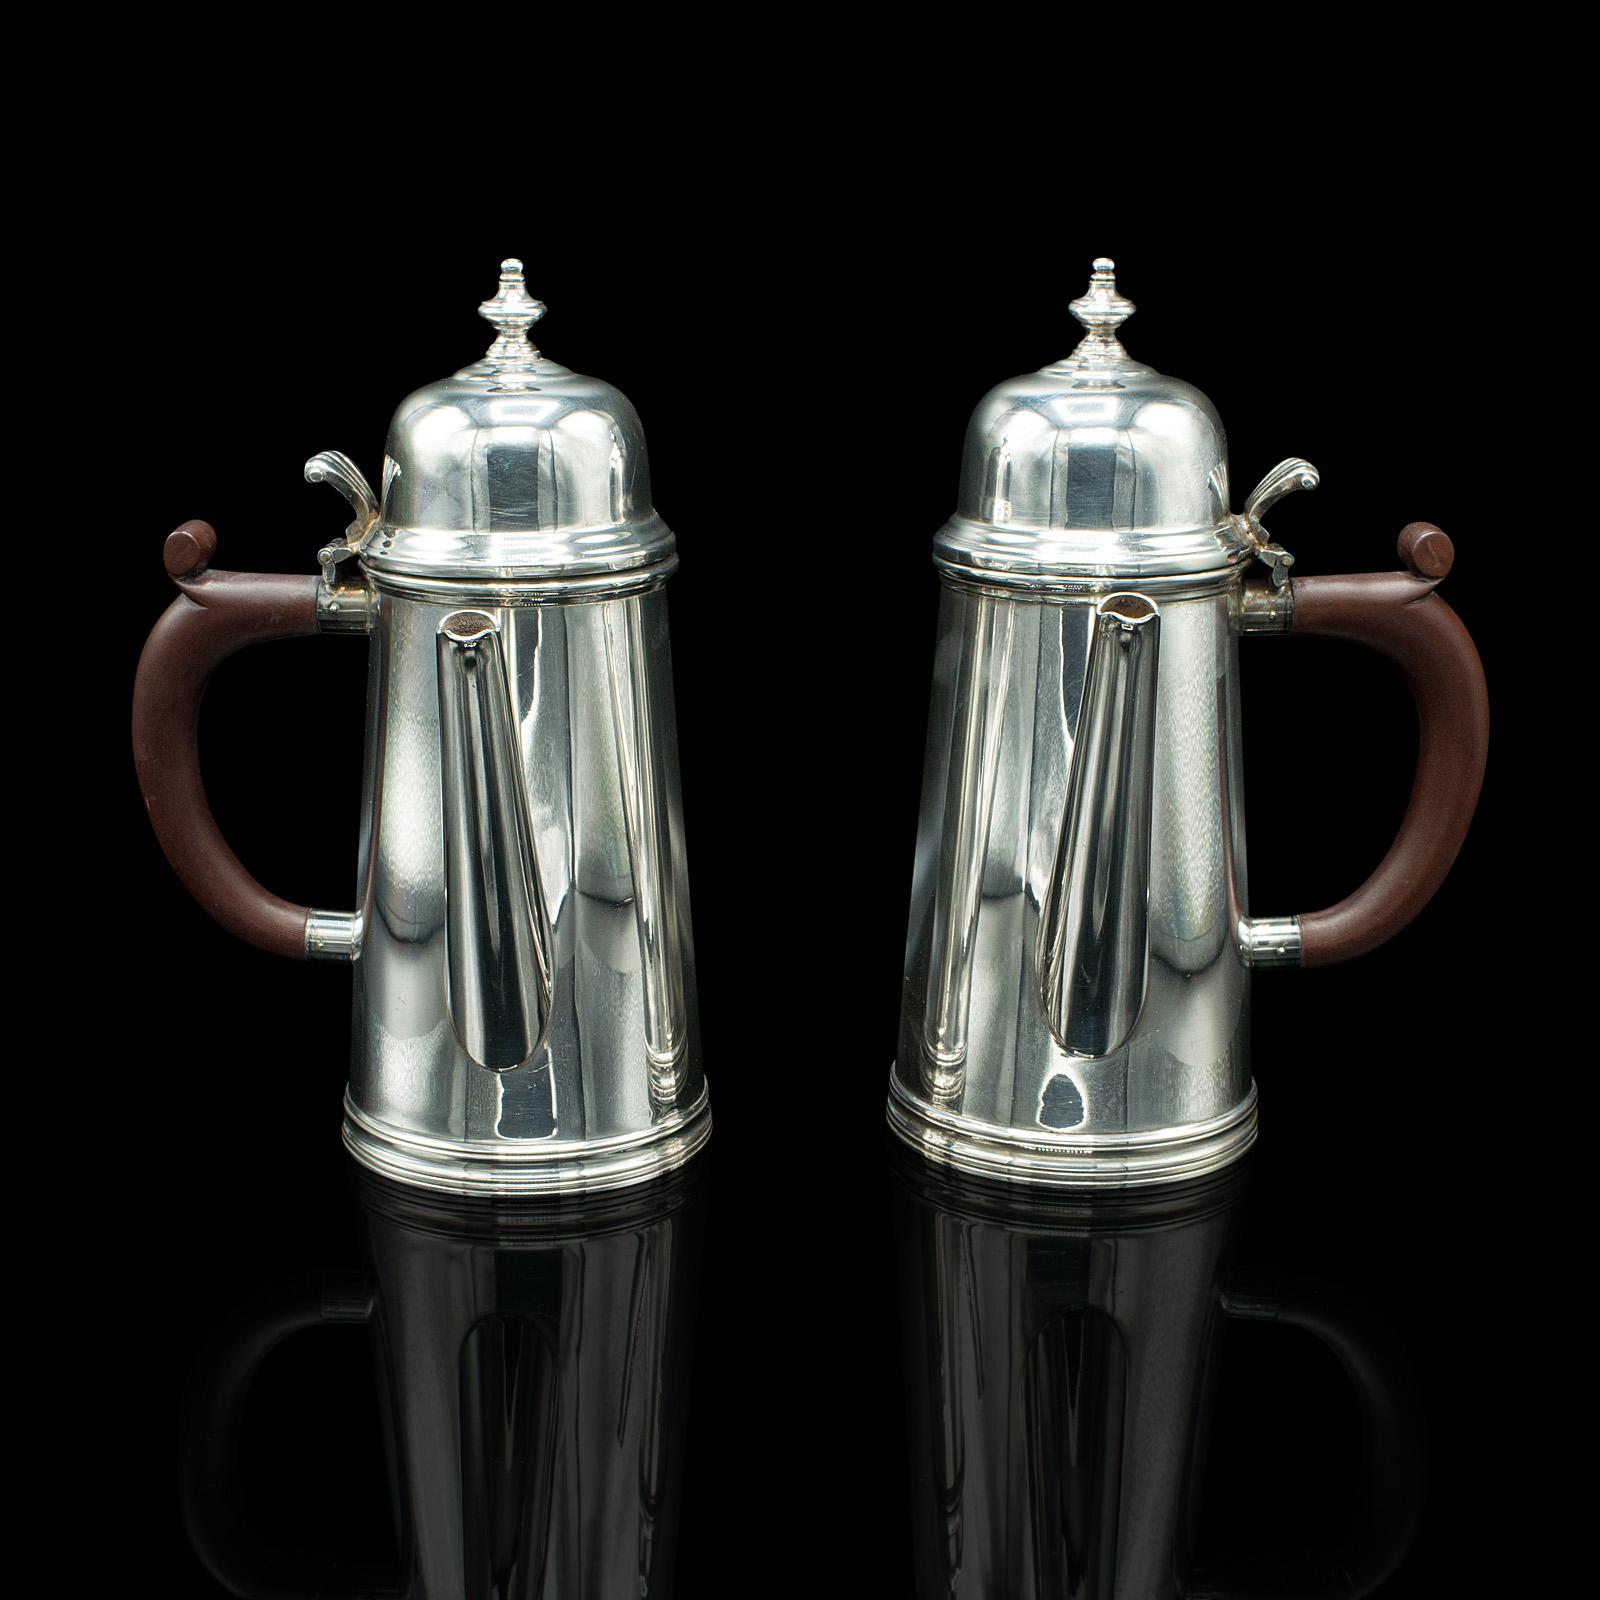 Il s'agit d'une paire de carafes à chocolat chaud vintage. Une cafetière anglaise en métal argenté datant du milieu du 20e siècle, vers 1940.

Fascinants pichets de service à l'aspect brillant et aux superbes poignées
Présente une patine d'usage